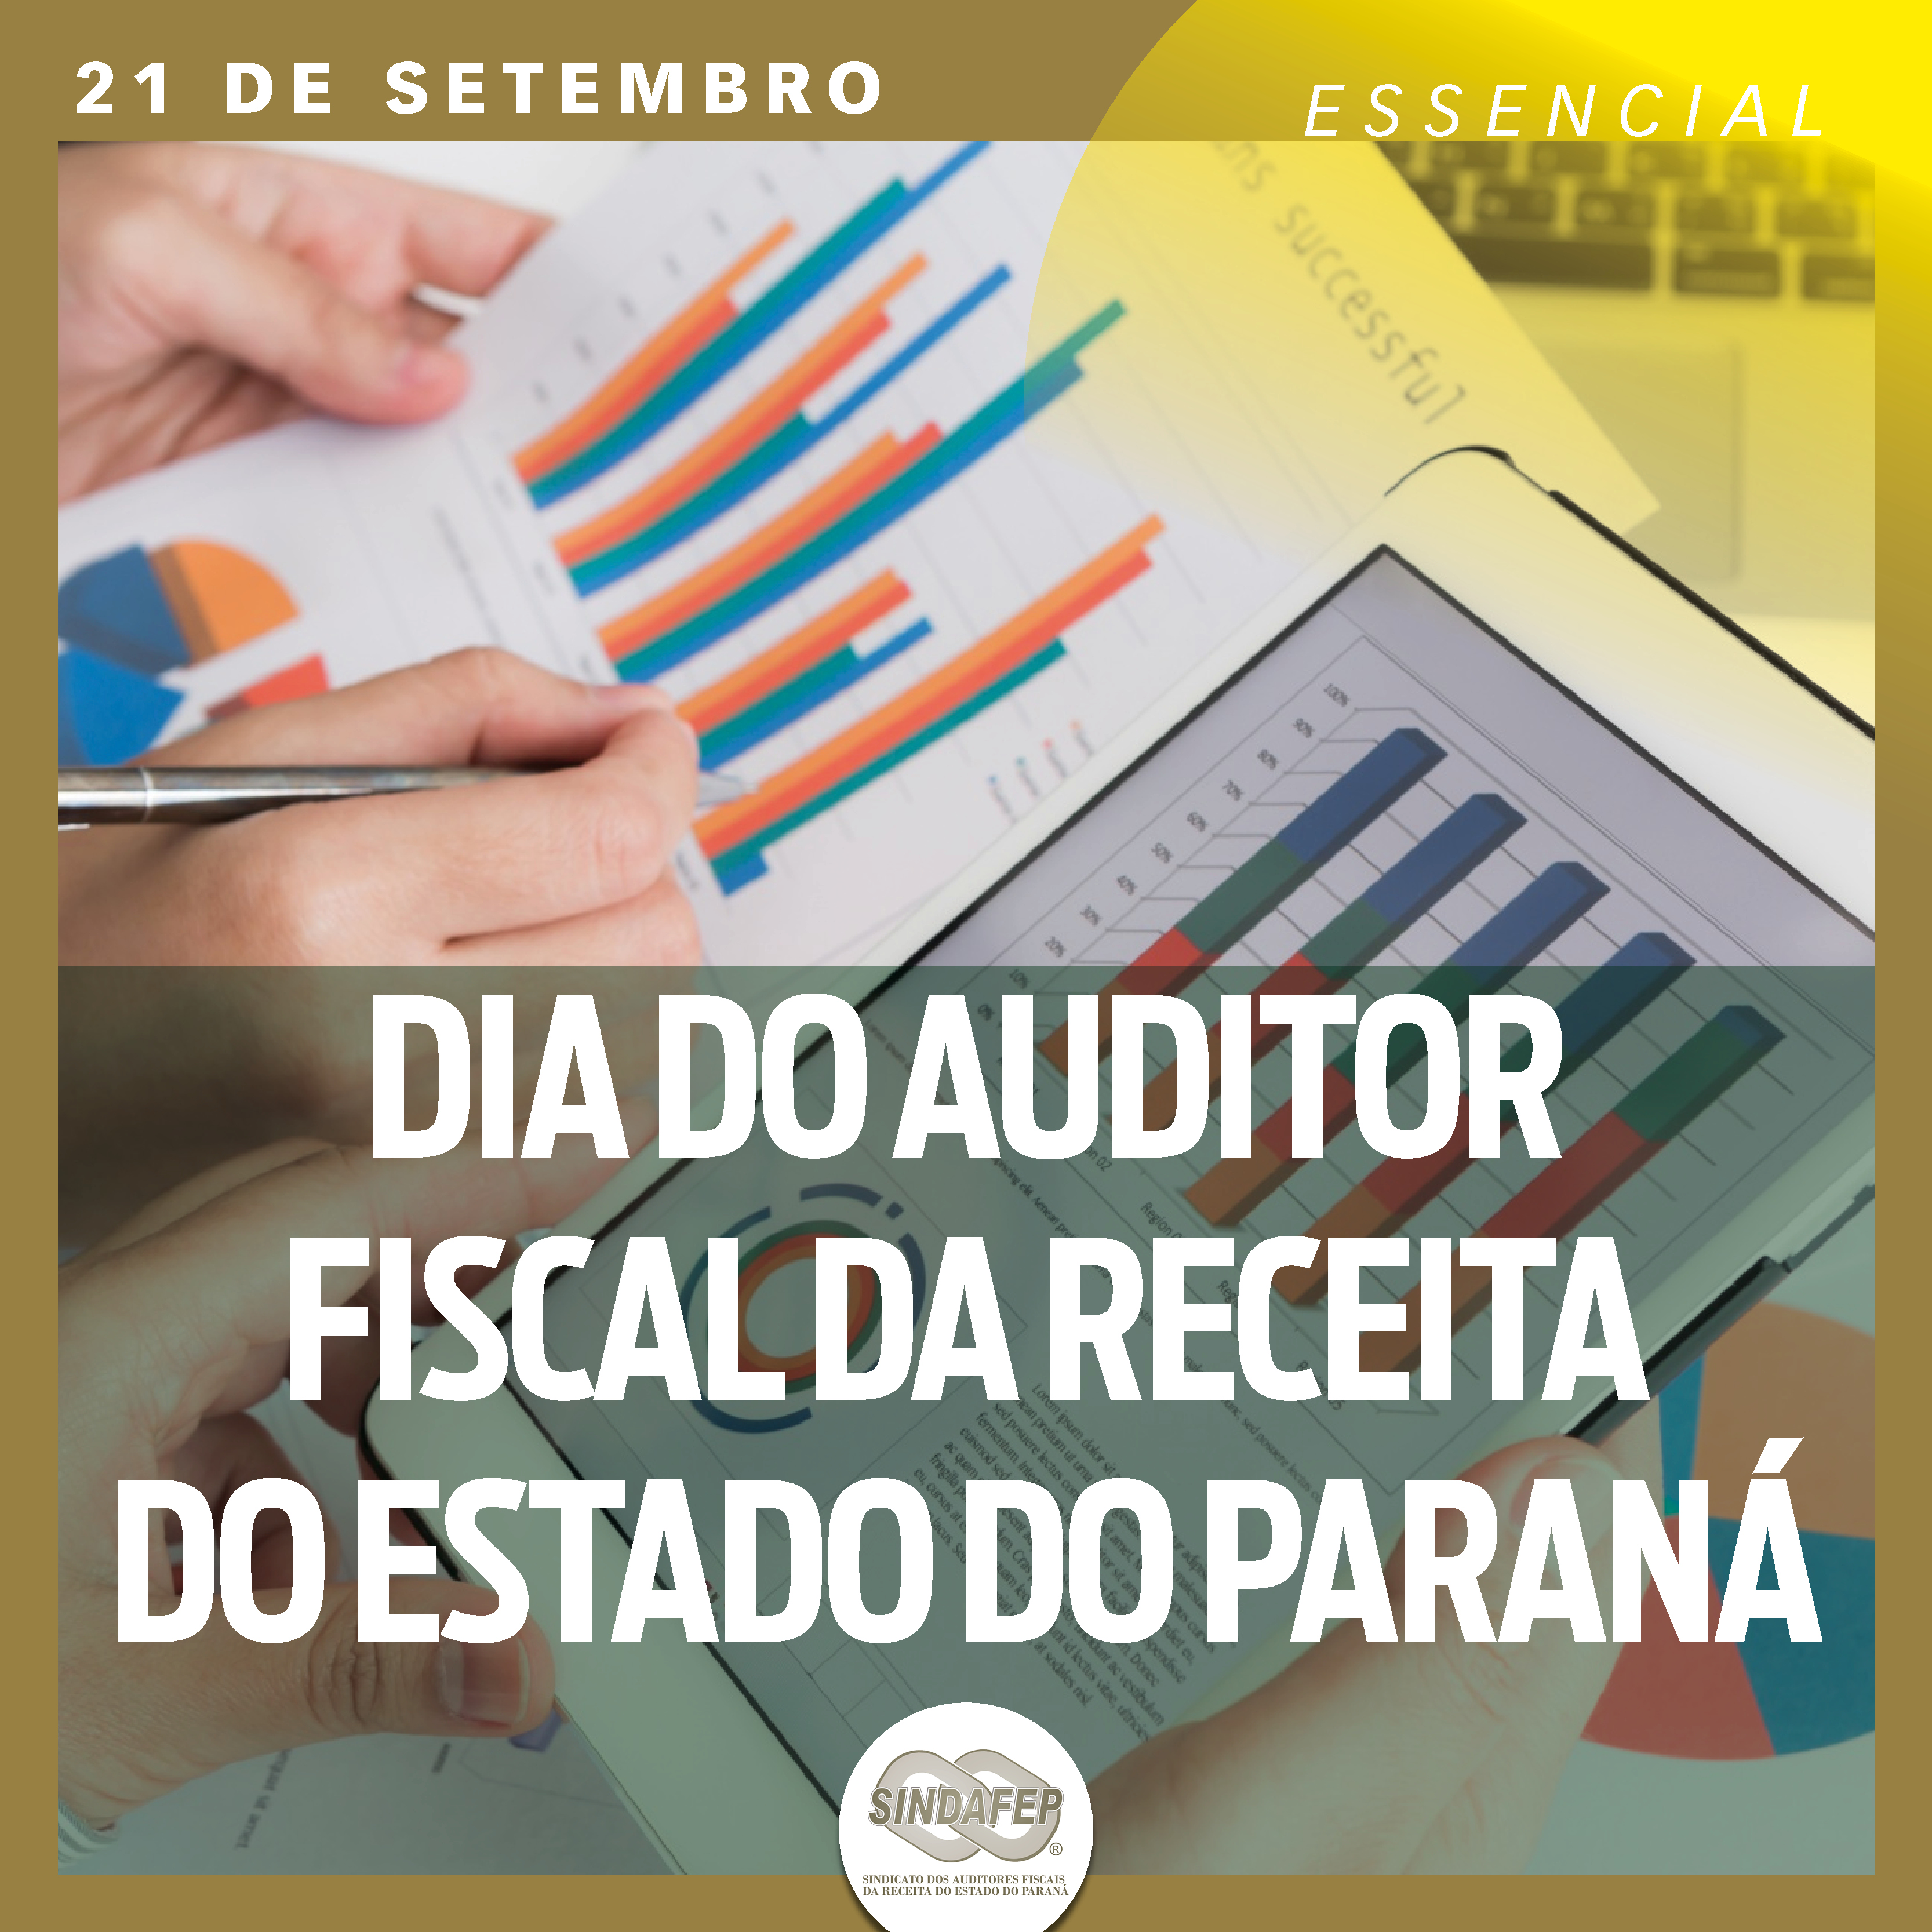 Dia do Auditor Fiscal da Receita do Estado do Paraná: servidores são essenciais para o bom funcionamento dos municípios